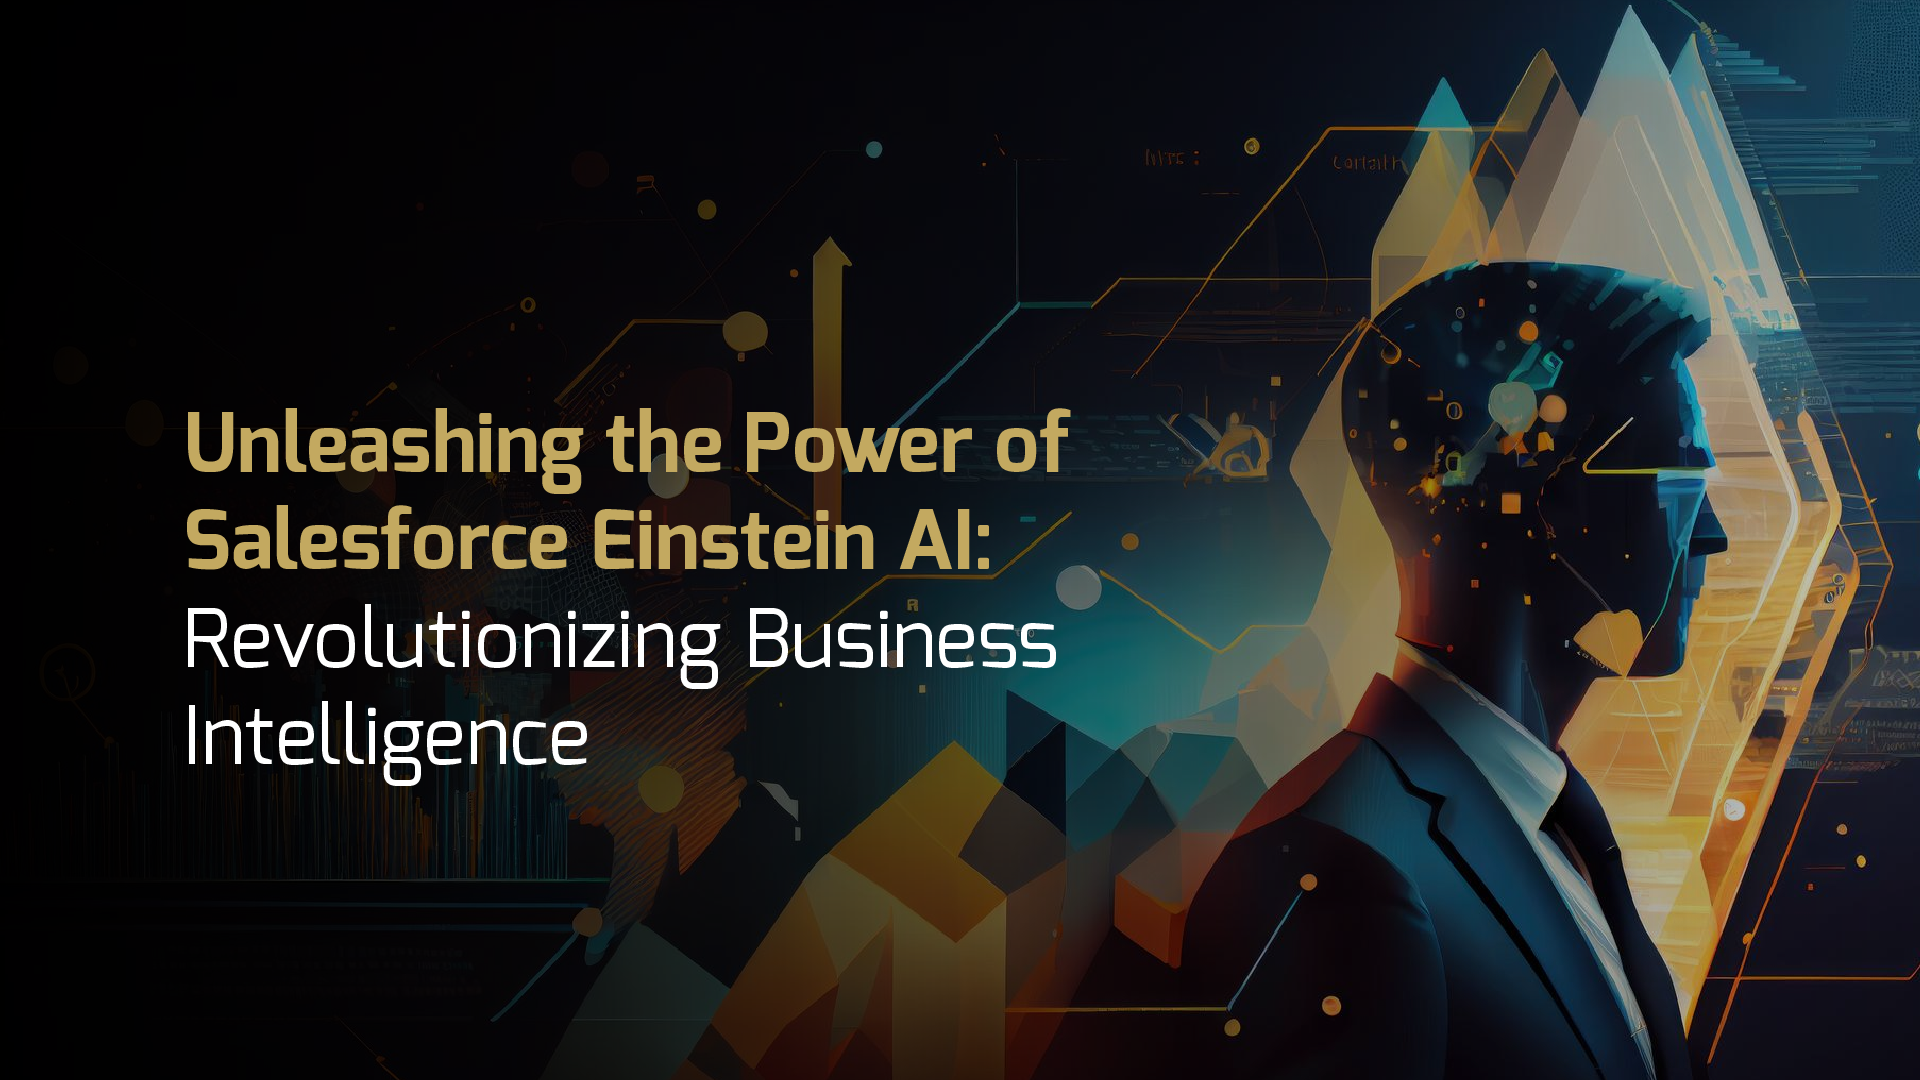 Salesforce Einstein AI